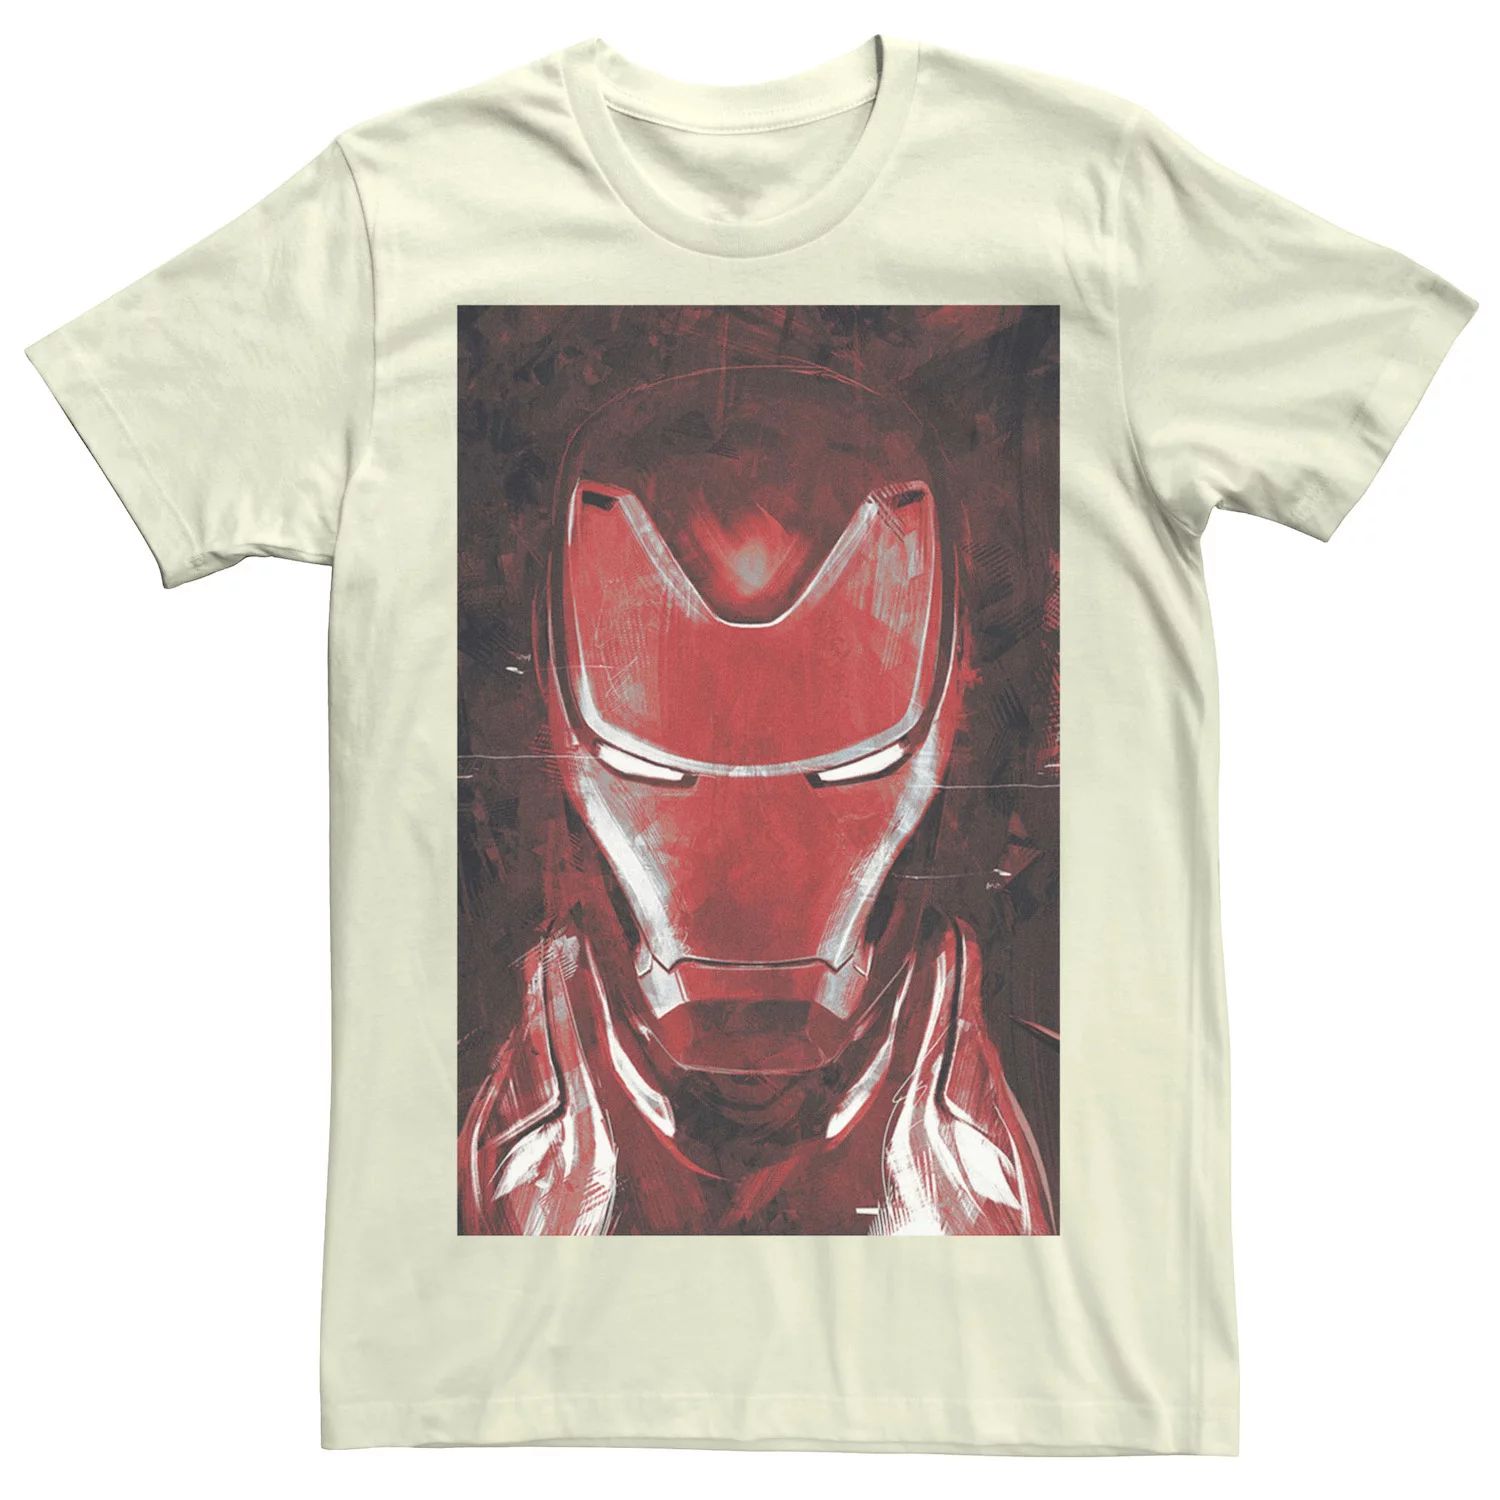 Мужская красная футболка с изображением портрета Железного человека «Мстители: Финал» Marvel